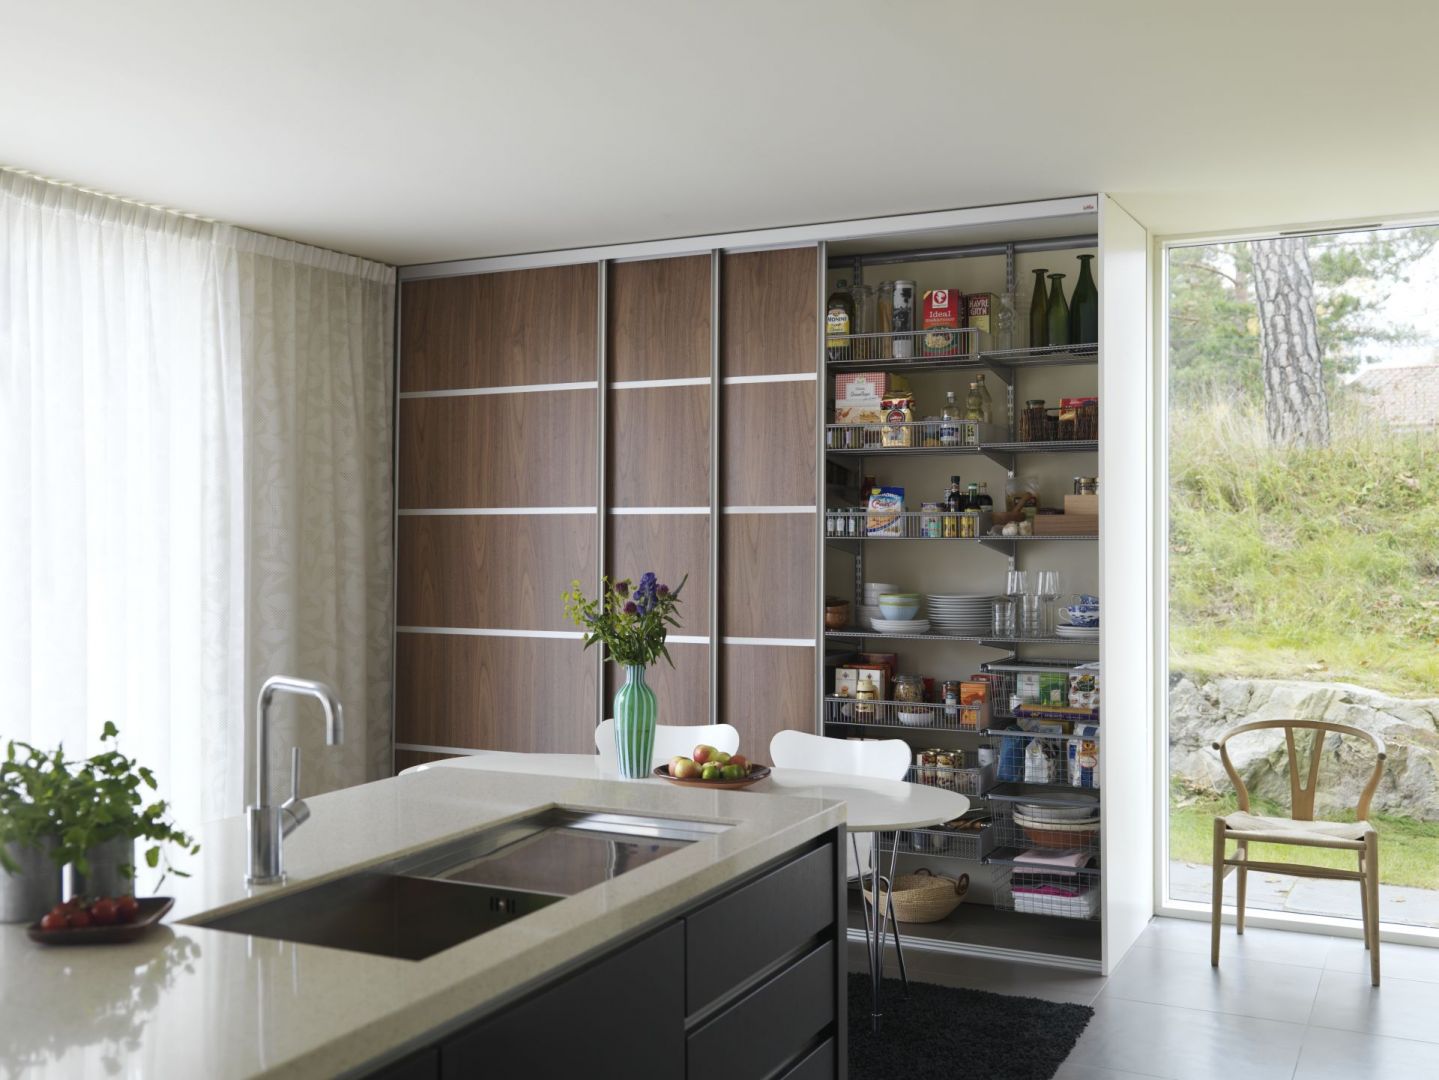 Drzwi przesuwne sprawiają, że wnętrze kuchni jest uporządkowane i minimalistyczne. Taka kuchenna szafa jest doskonałą alternatywą dla klasycznych szafek, jeśli chcesz urządzić kuchnię nowocześnie. Fot. Elfa